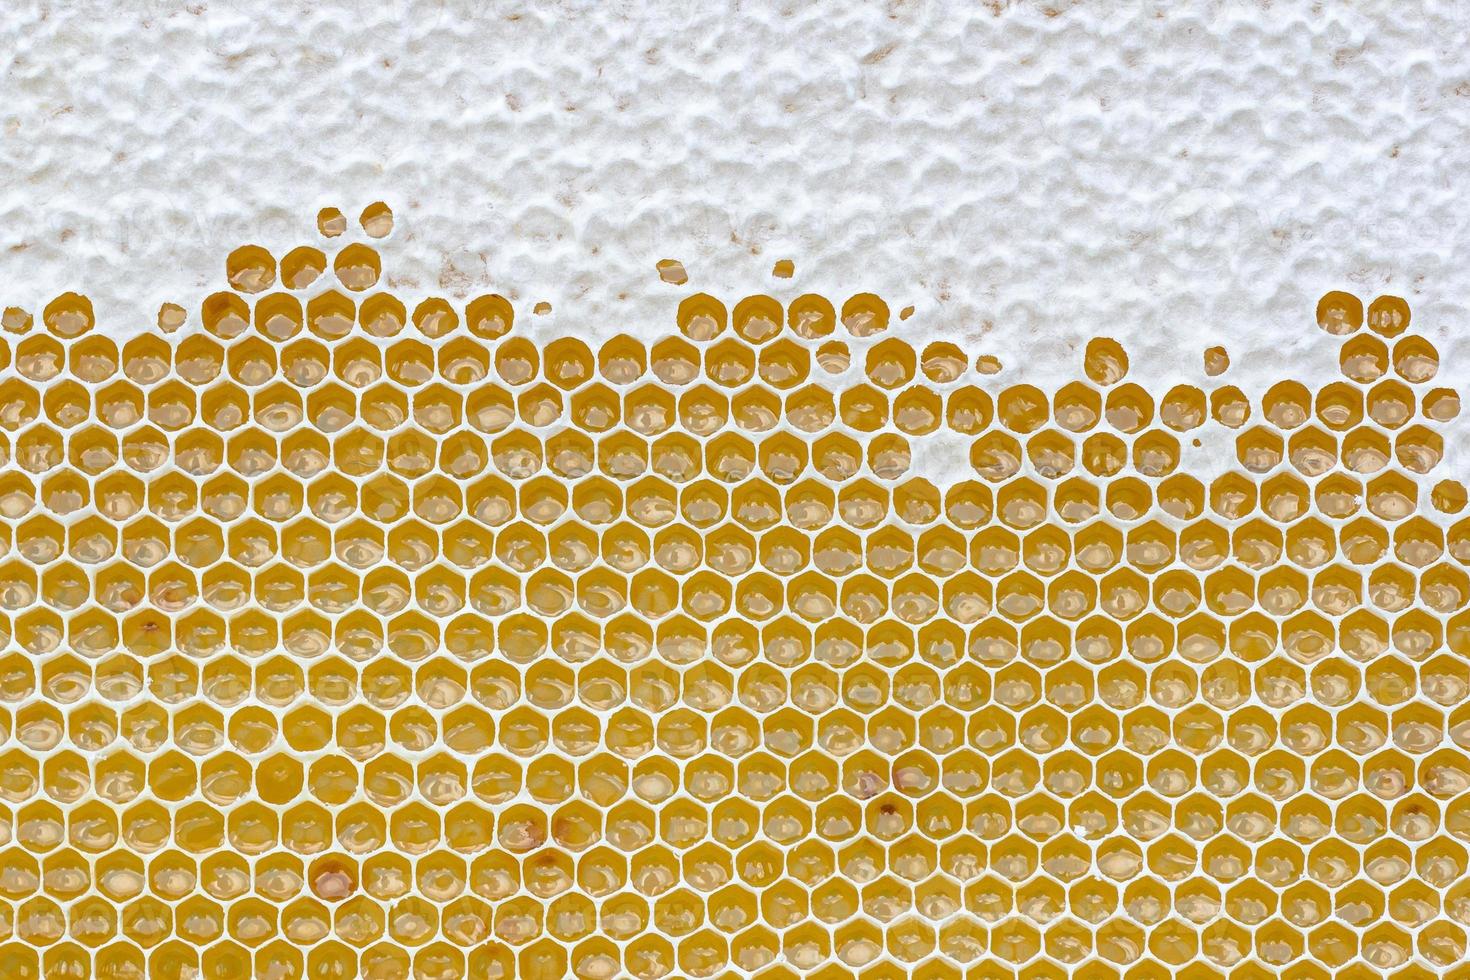 favo de mel cheio do mel. apicultura conceito foto